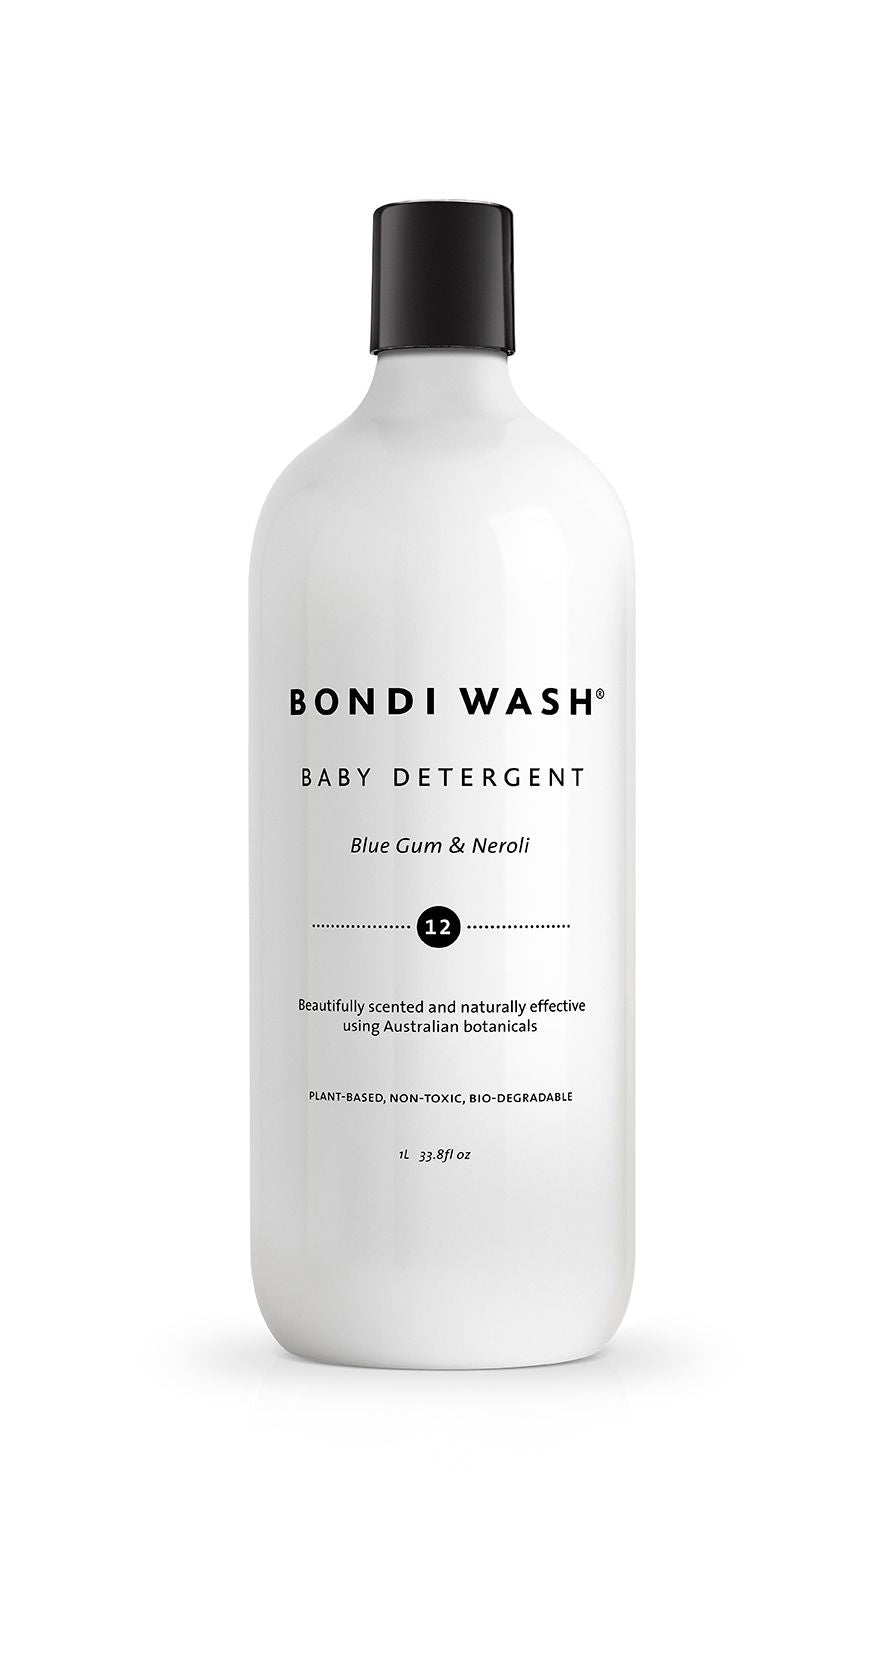 Bondi Wash Baby Detergent